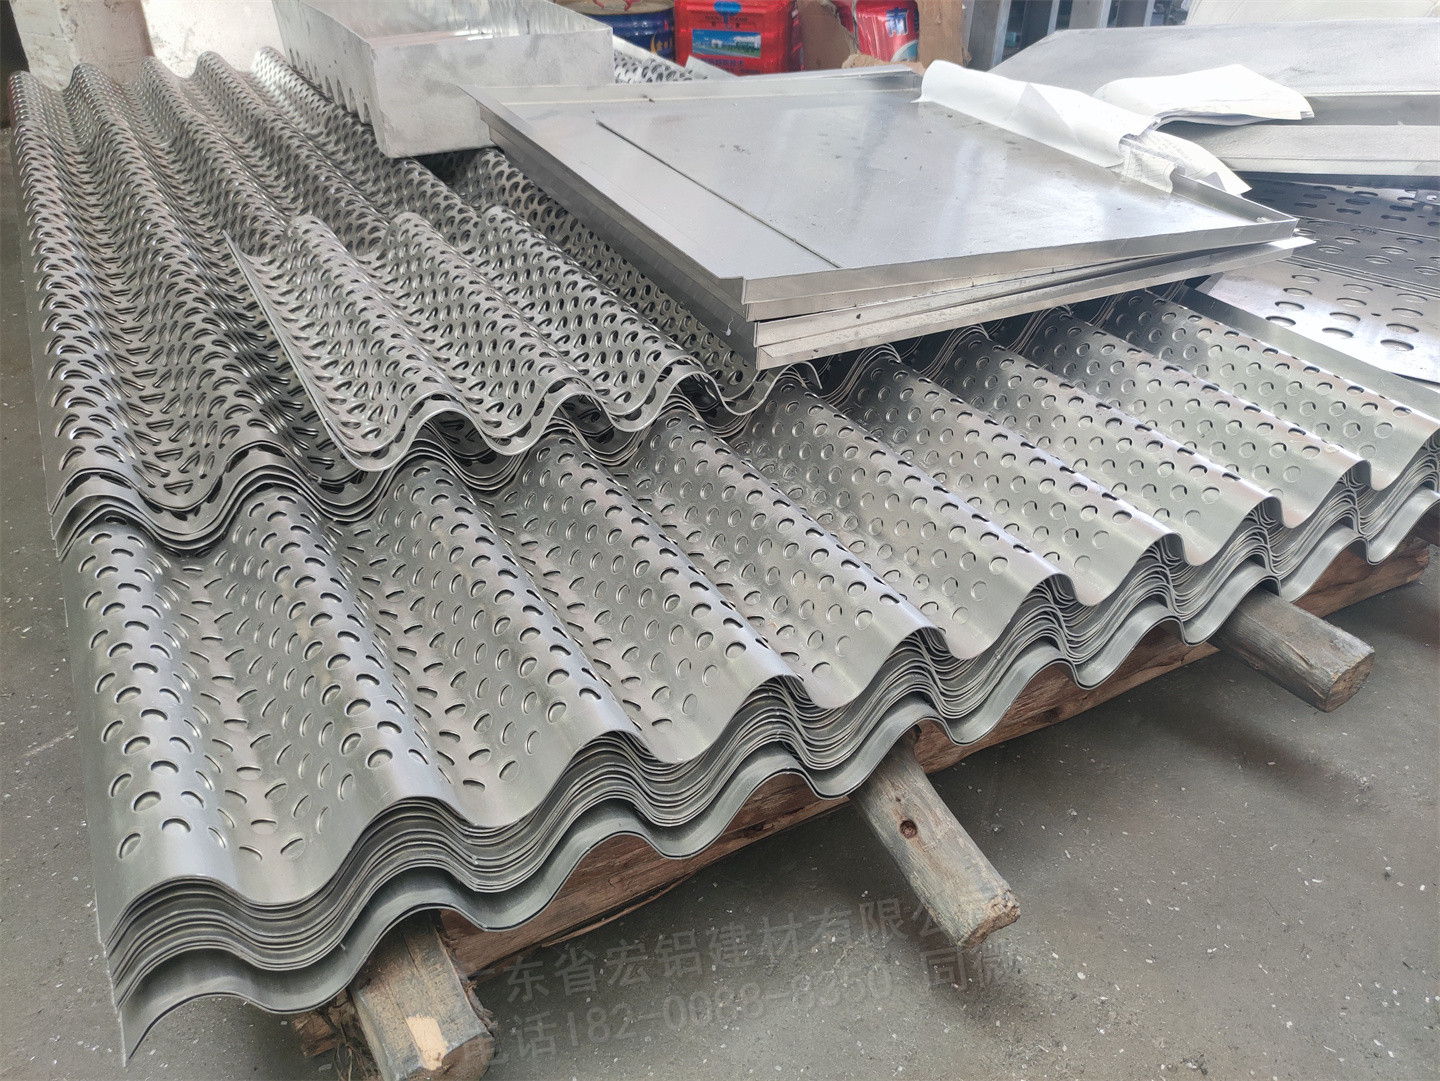 福建绿化2mm铝单板定做厂家2mm铝单板福建定做厂家